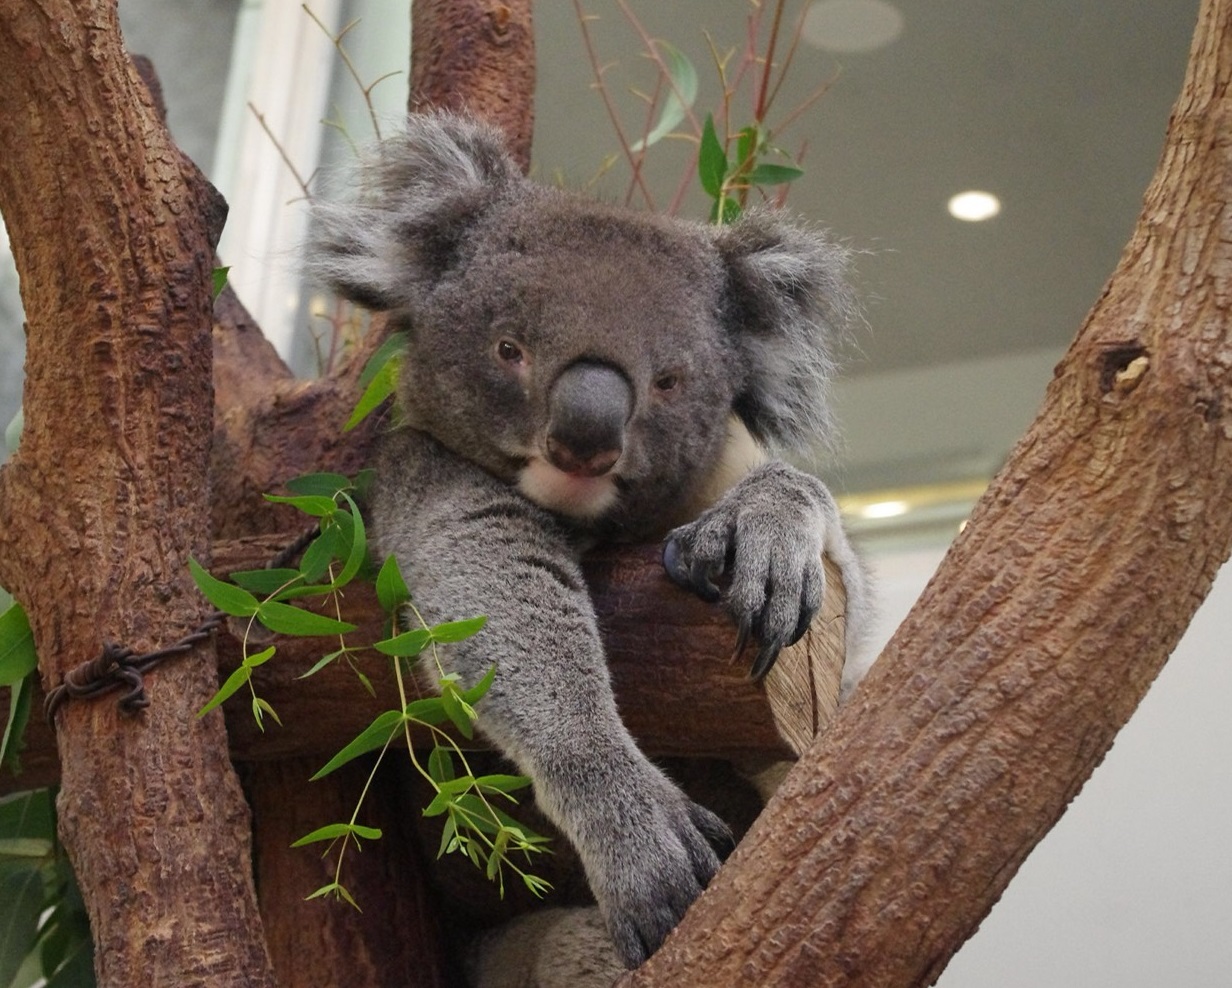 人気のコアラが住むコアラ館では、国内では珍しい大型の南方系コアラを観察することができます